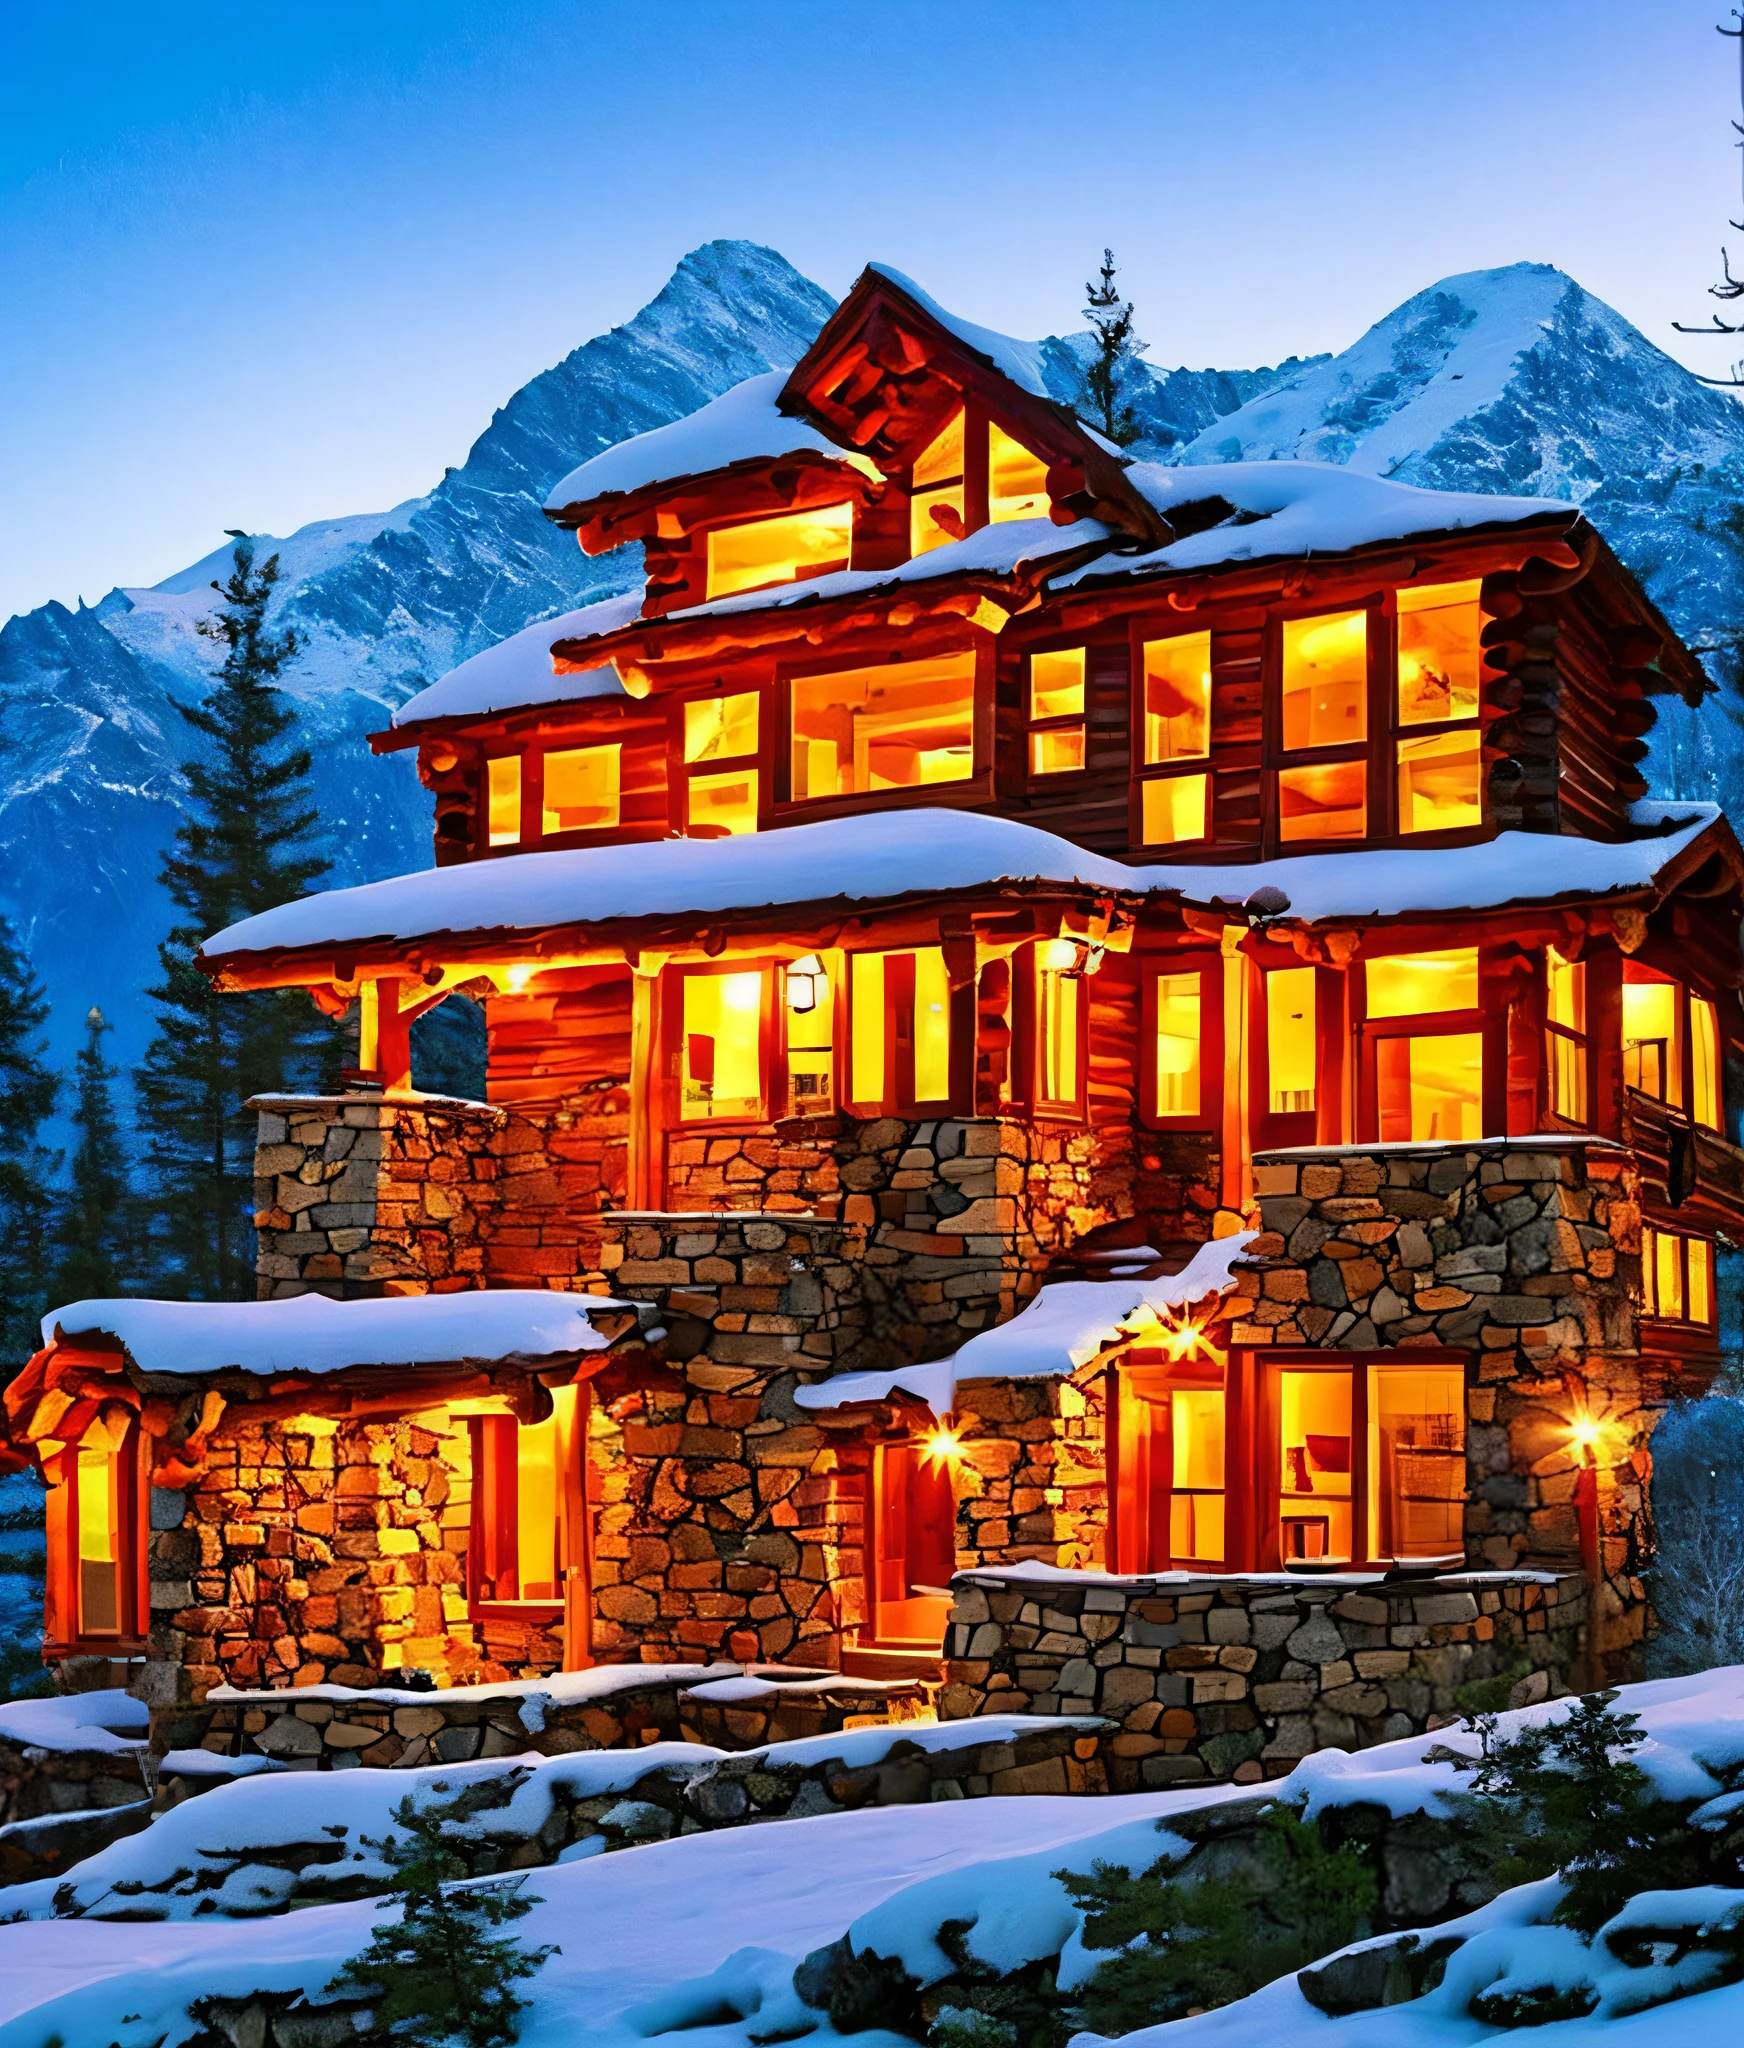 Crea una hermosa escena de montaña con una casa de troncos junto a una montaña escarpada con picos nevados y una hermosa puesta de sol